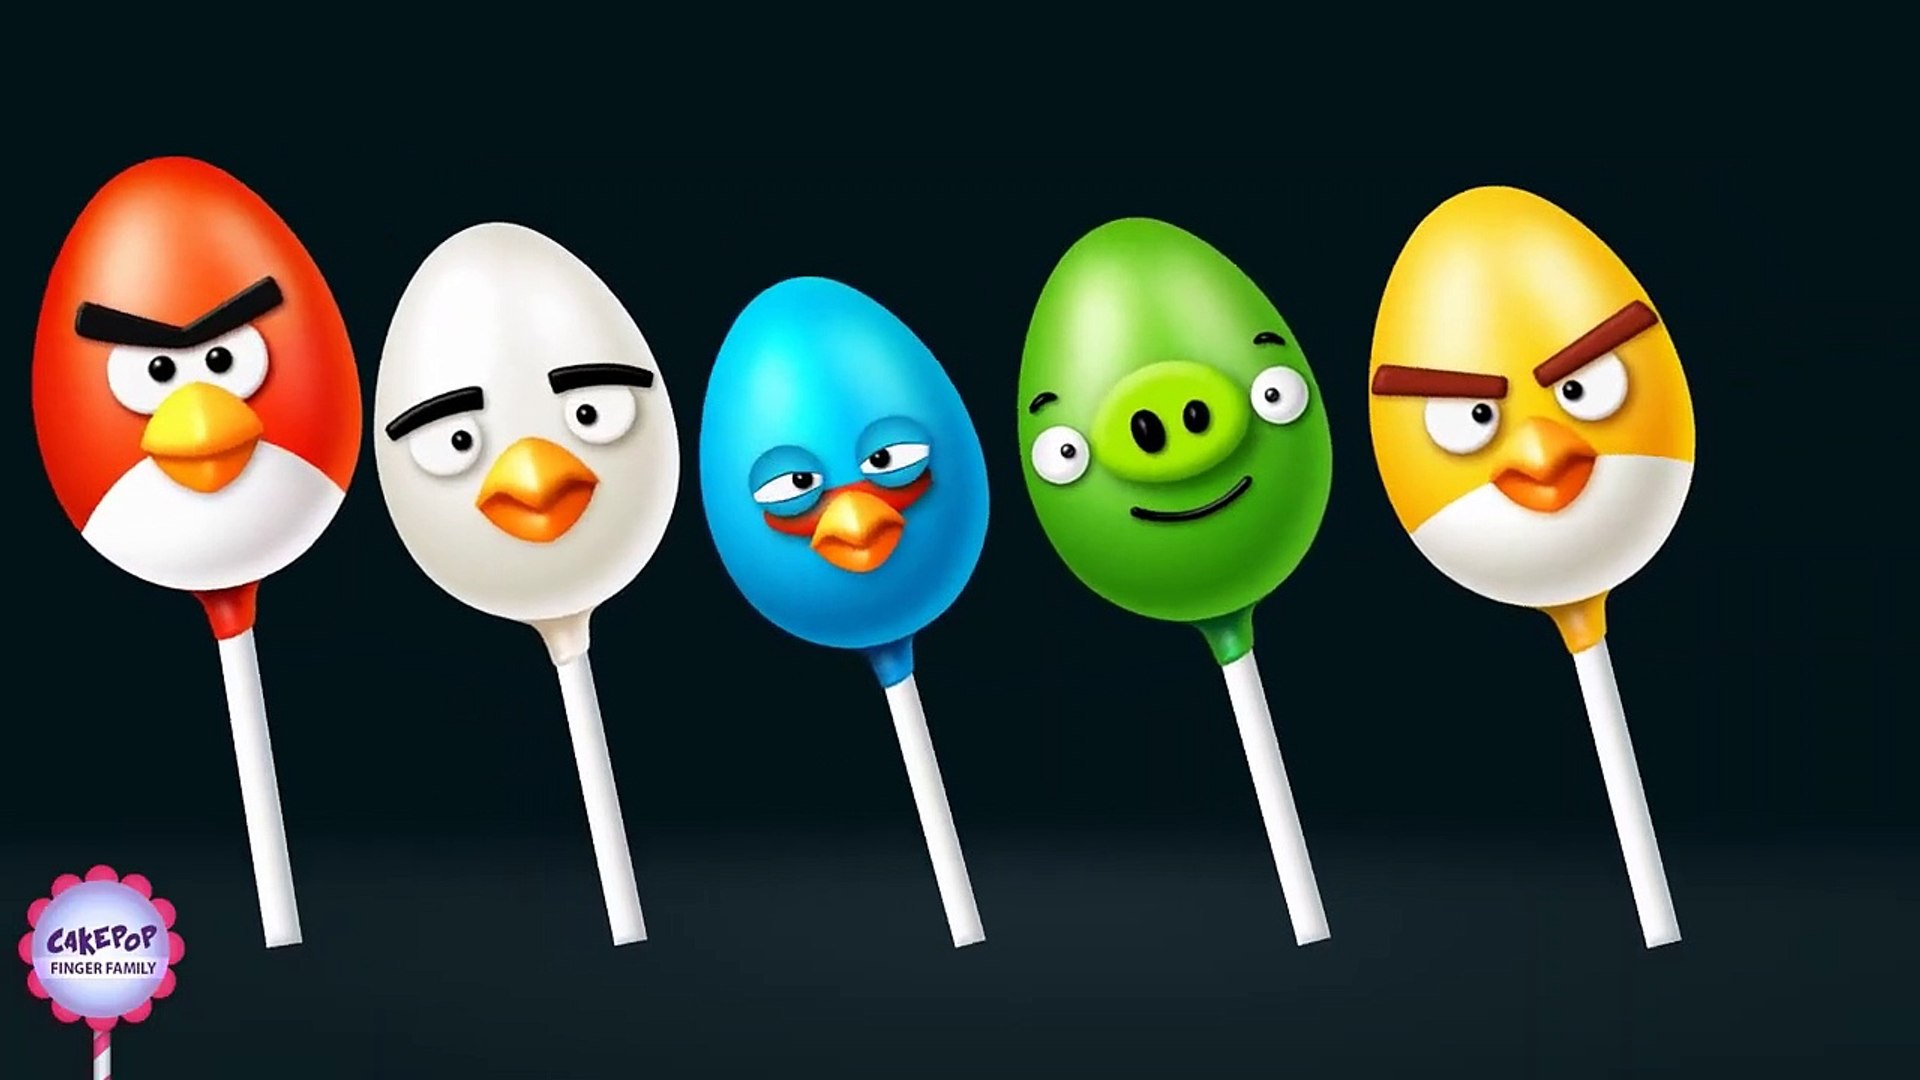 Afspraak Vertrouwen op mengsel The Finger Family Easter Egg Angry Birds Finger Family Nursery Rhyme - Cake  Pop Finger Family Songs - video Dailymotion